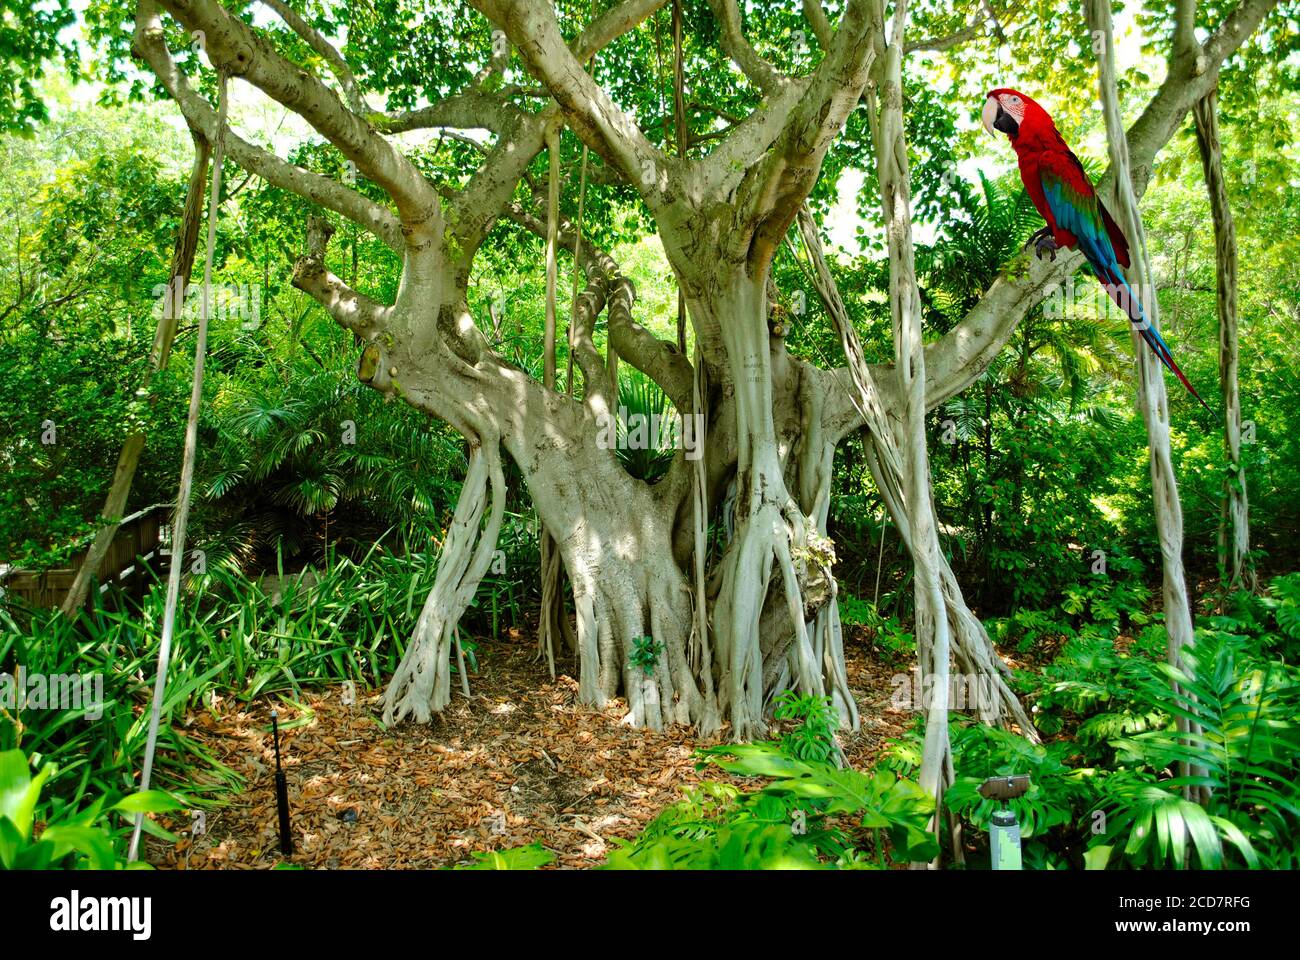 Scarlatto macaw nome latino Ara macao appollaiato su un Banyan Albero Nome latino Ficus benghalensis Foto Stock